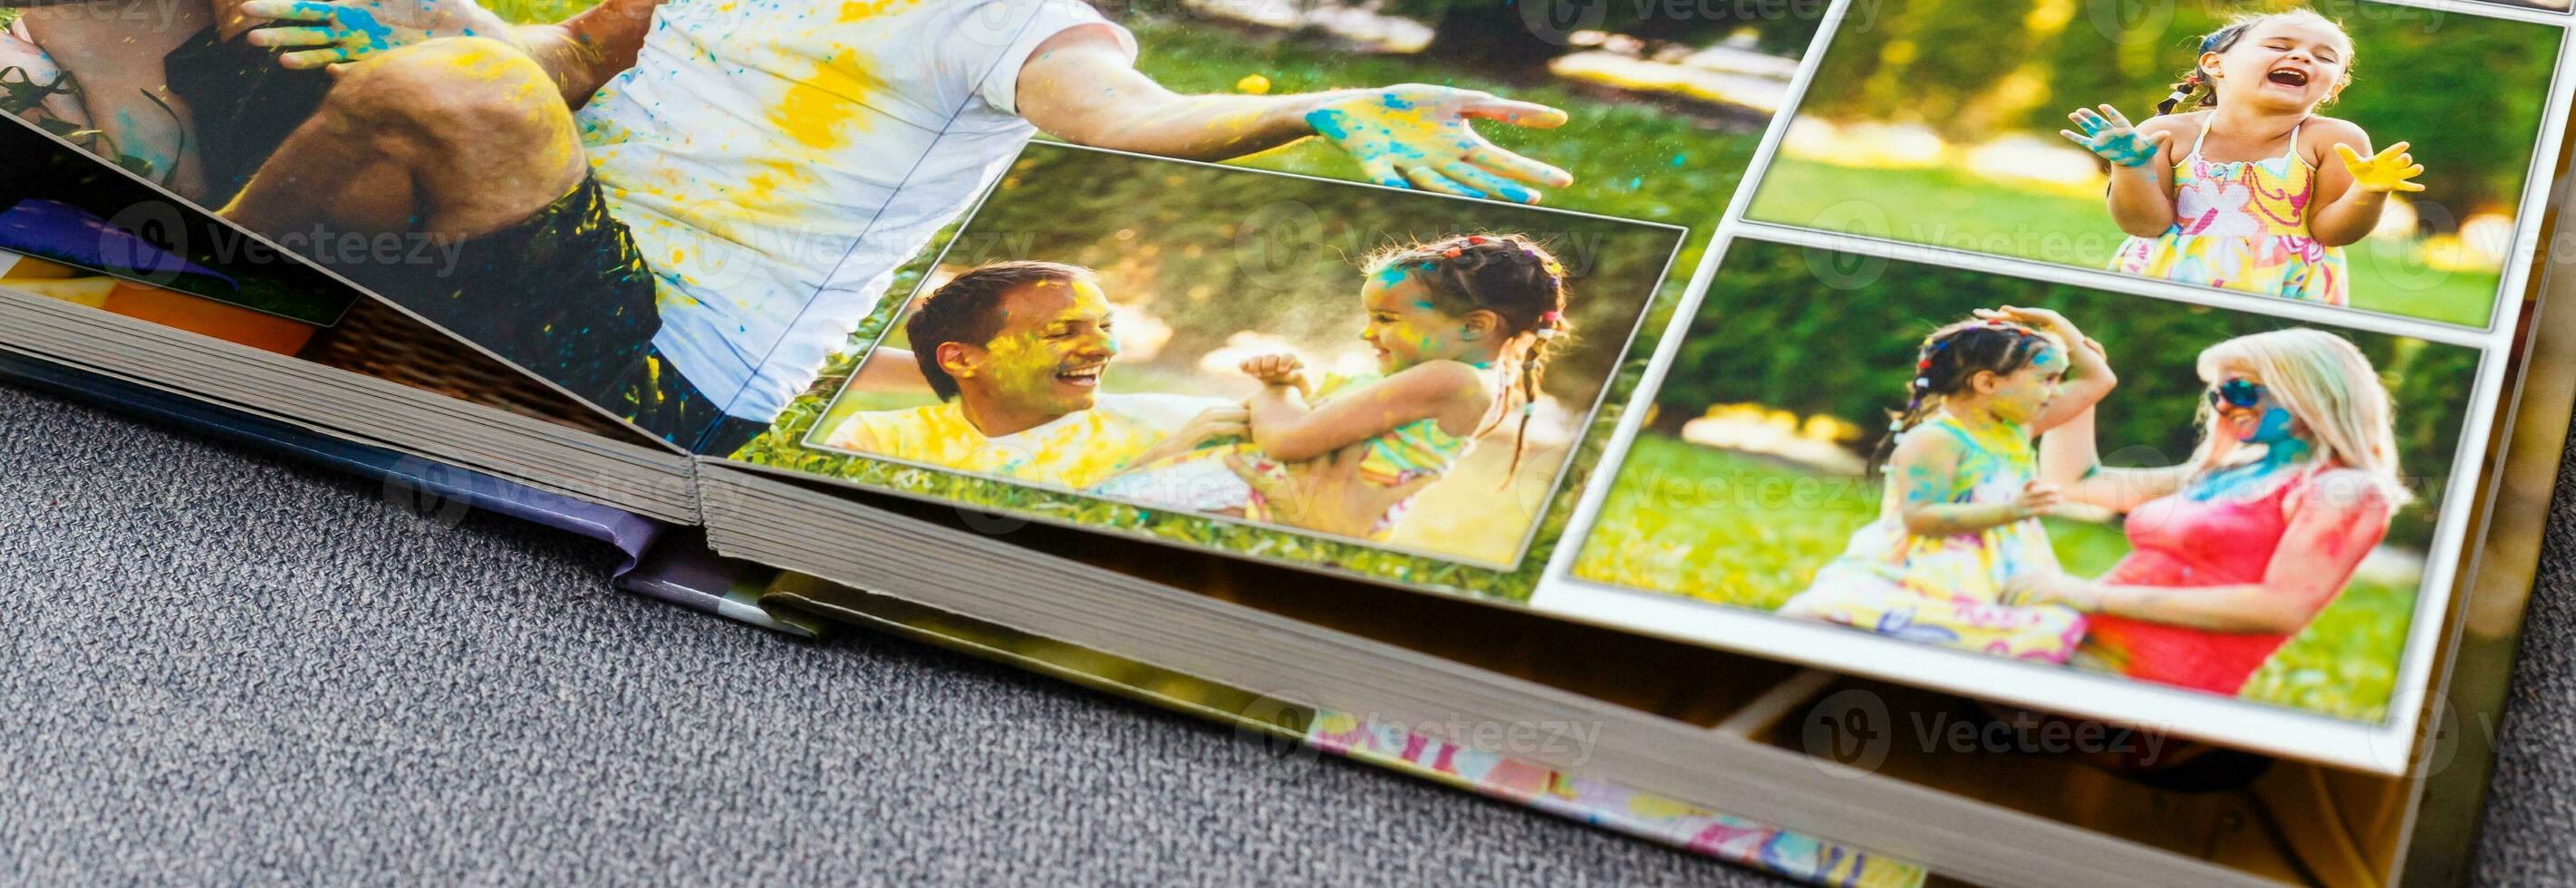 fotolibro álbum en cubierta mesa con viaje fotos